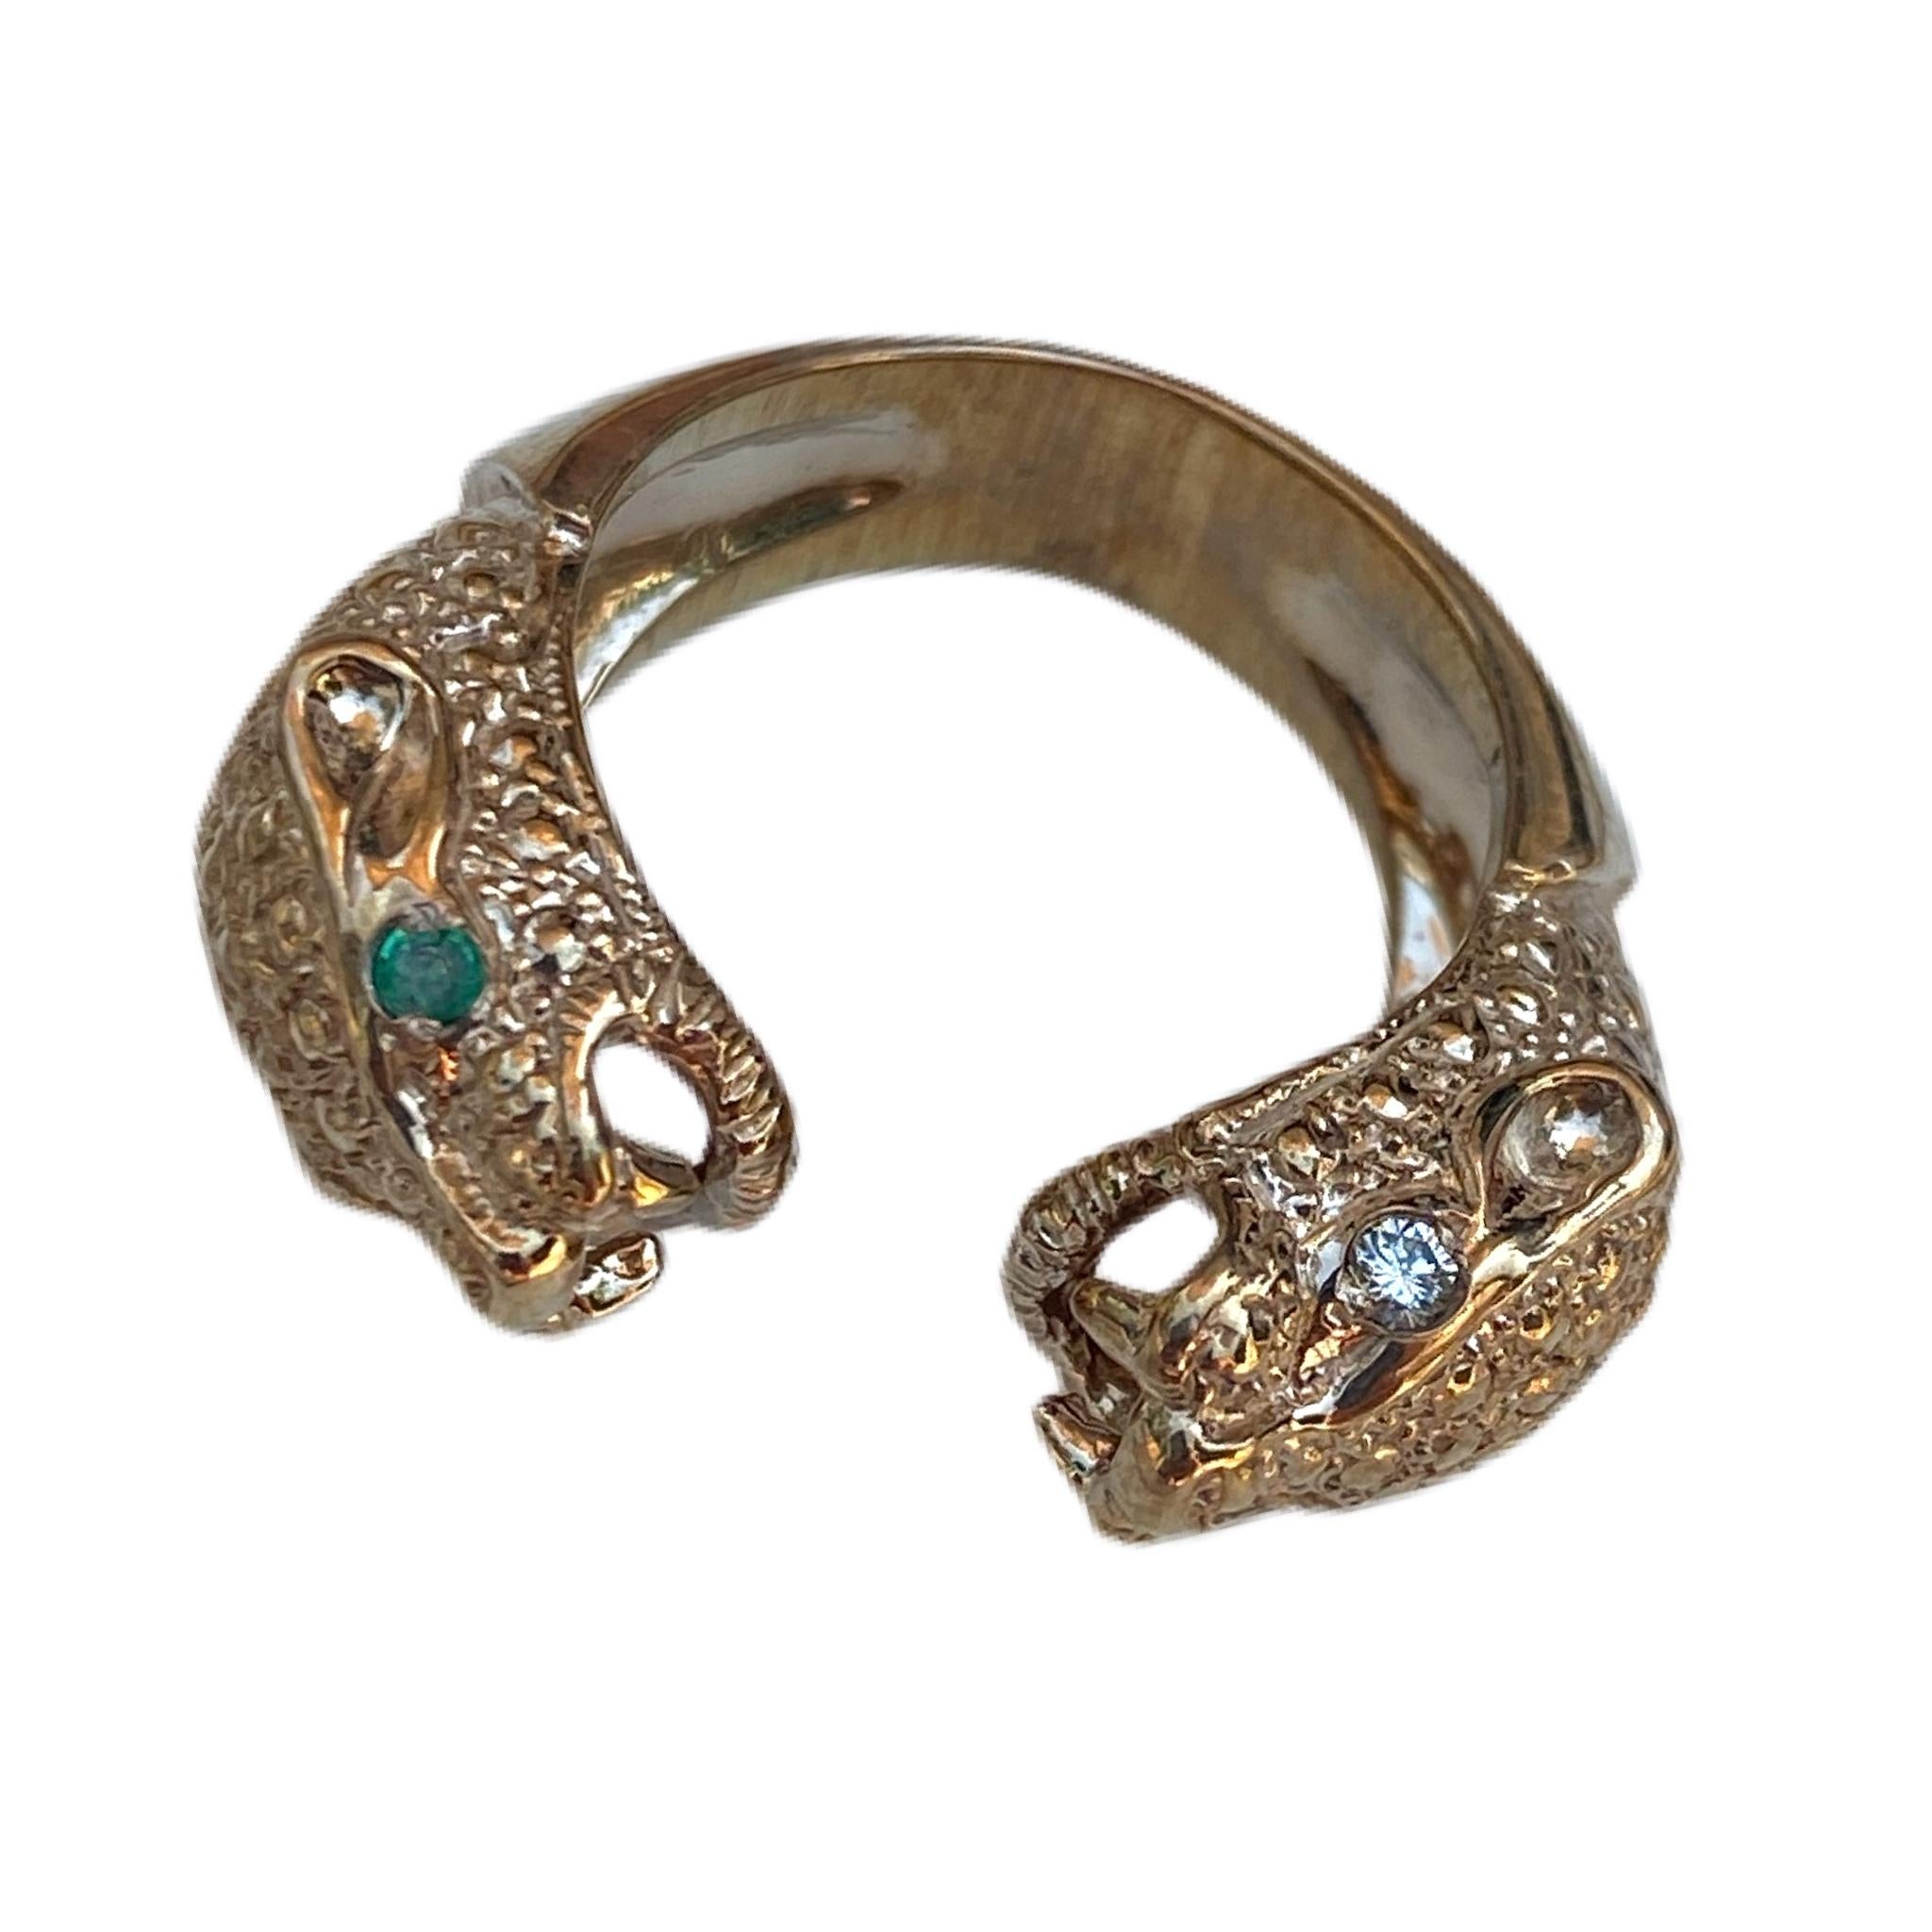 2 pcs Emerald 2 pcs White Diamond Jaguar Ring Bronze Animal Resizable J Dauphin
J DAUPHIN Ring 